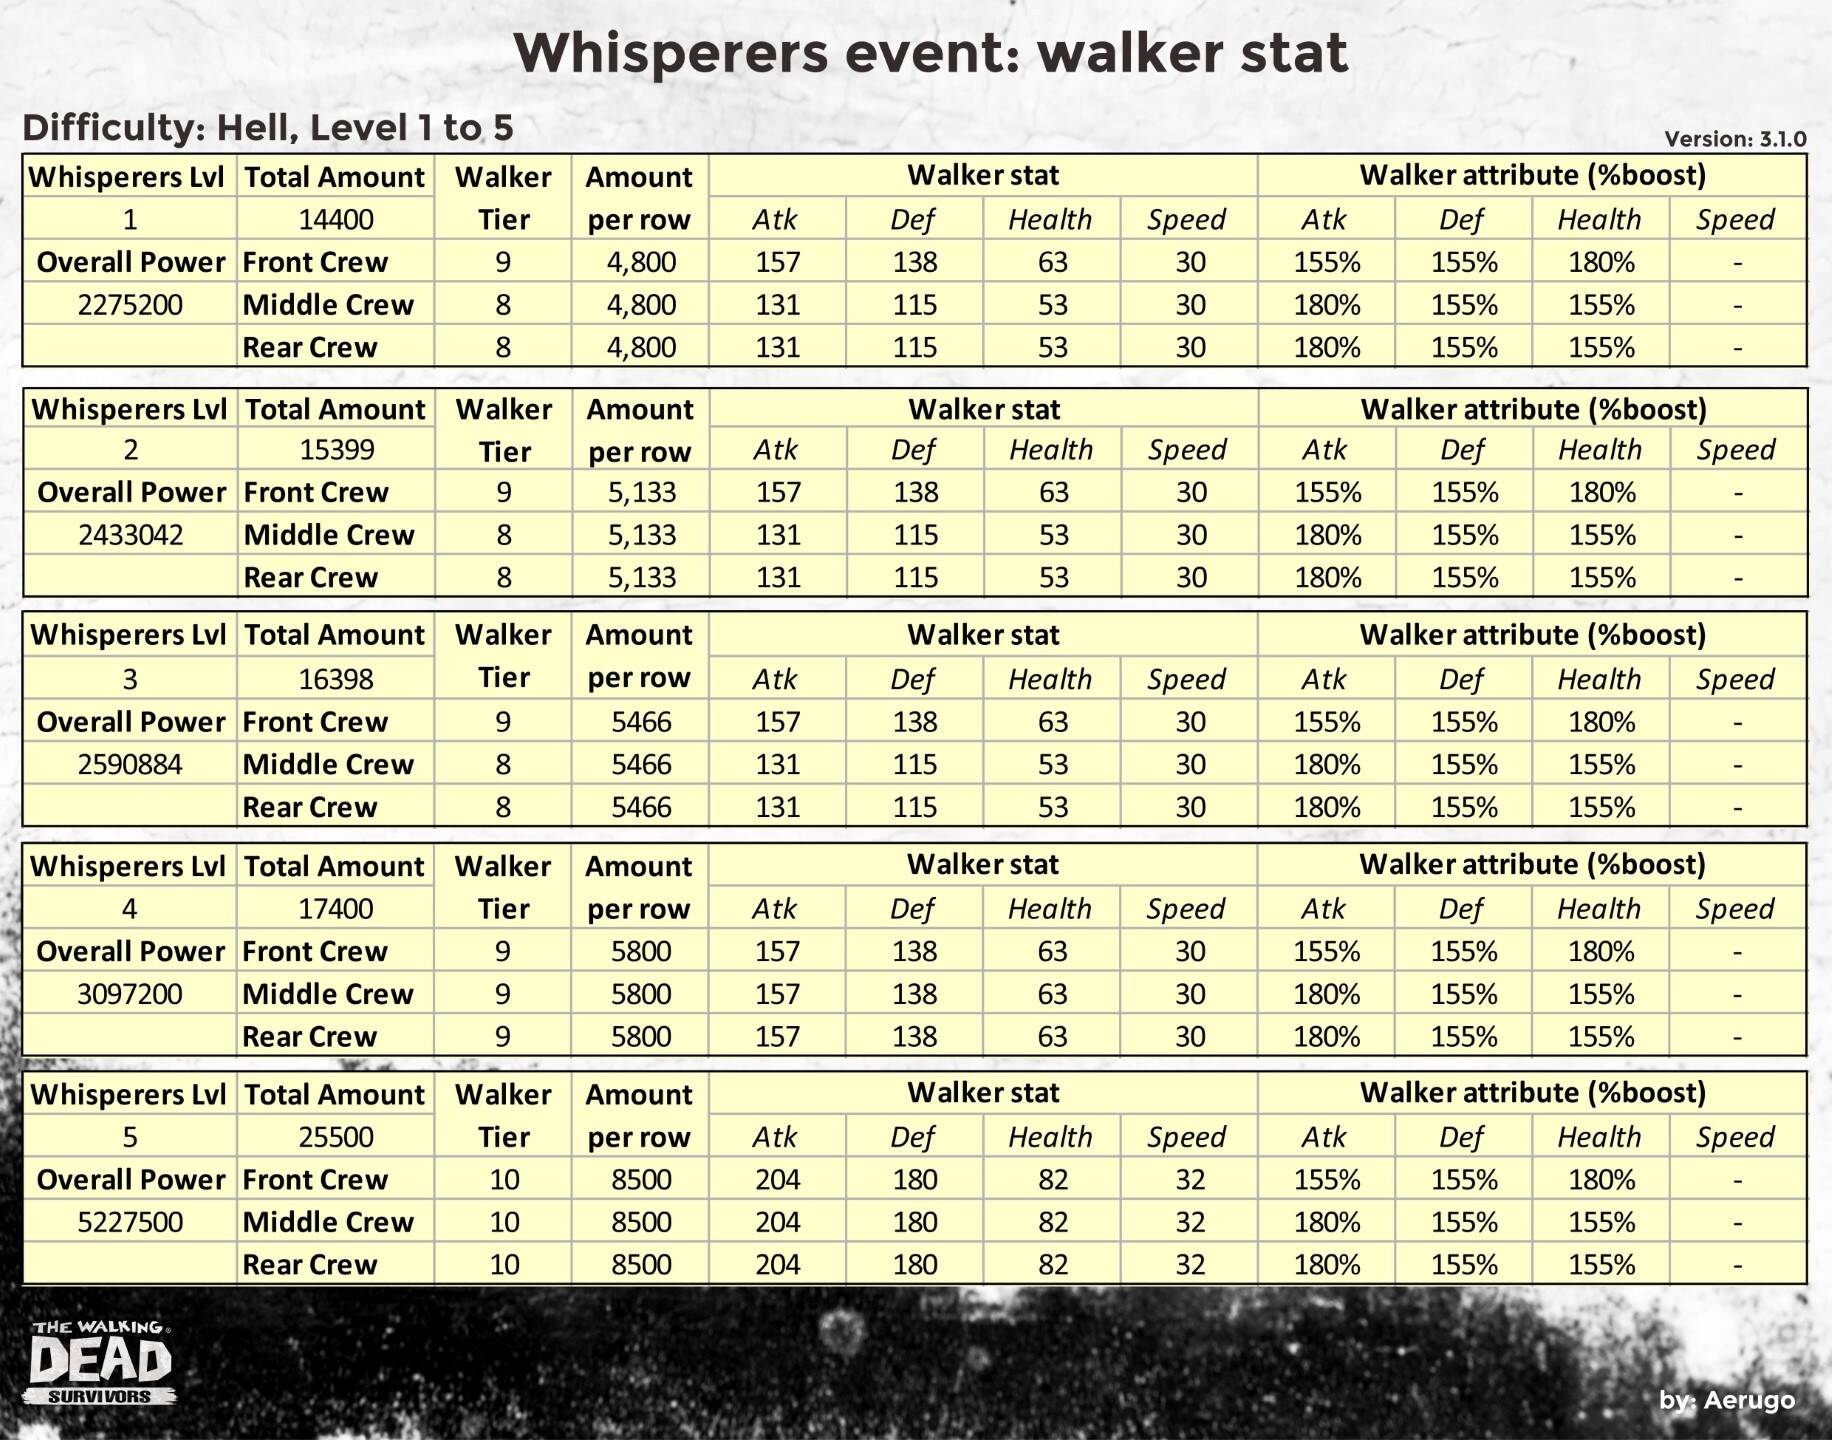 Whisperers_walkerstat_v3.1.0_part17 (1).jpg